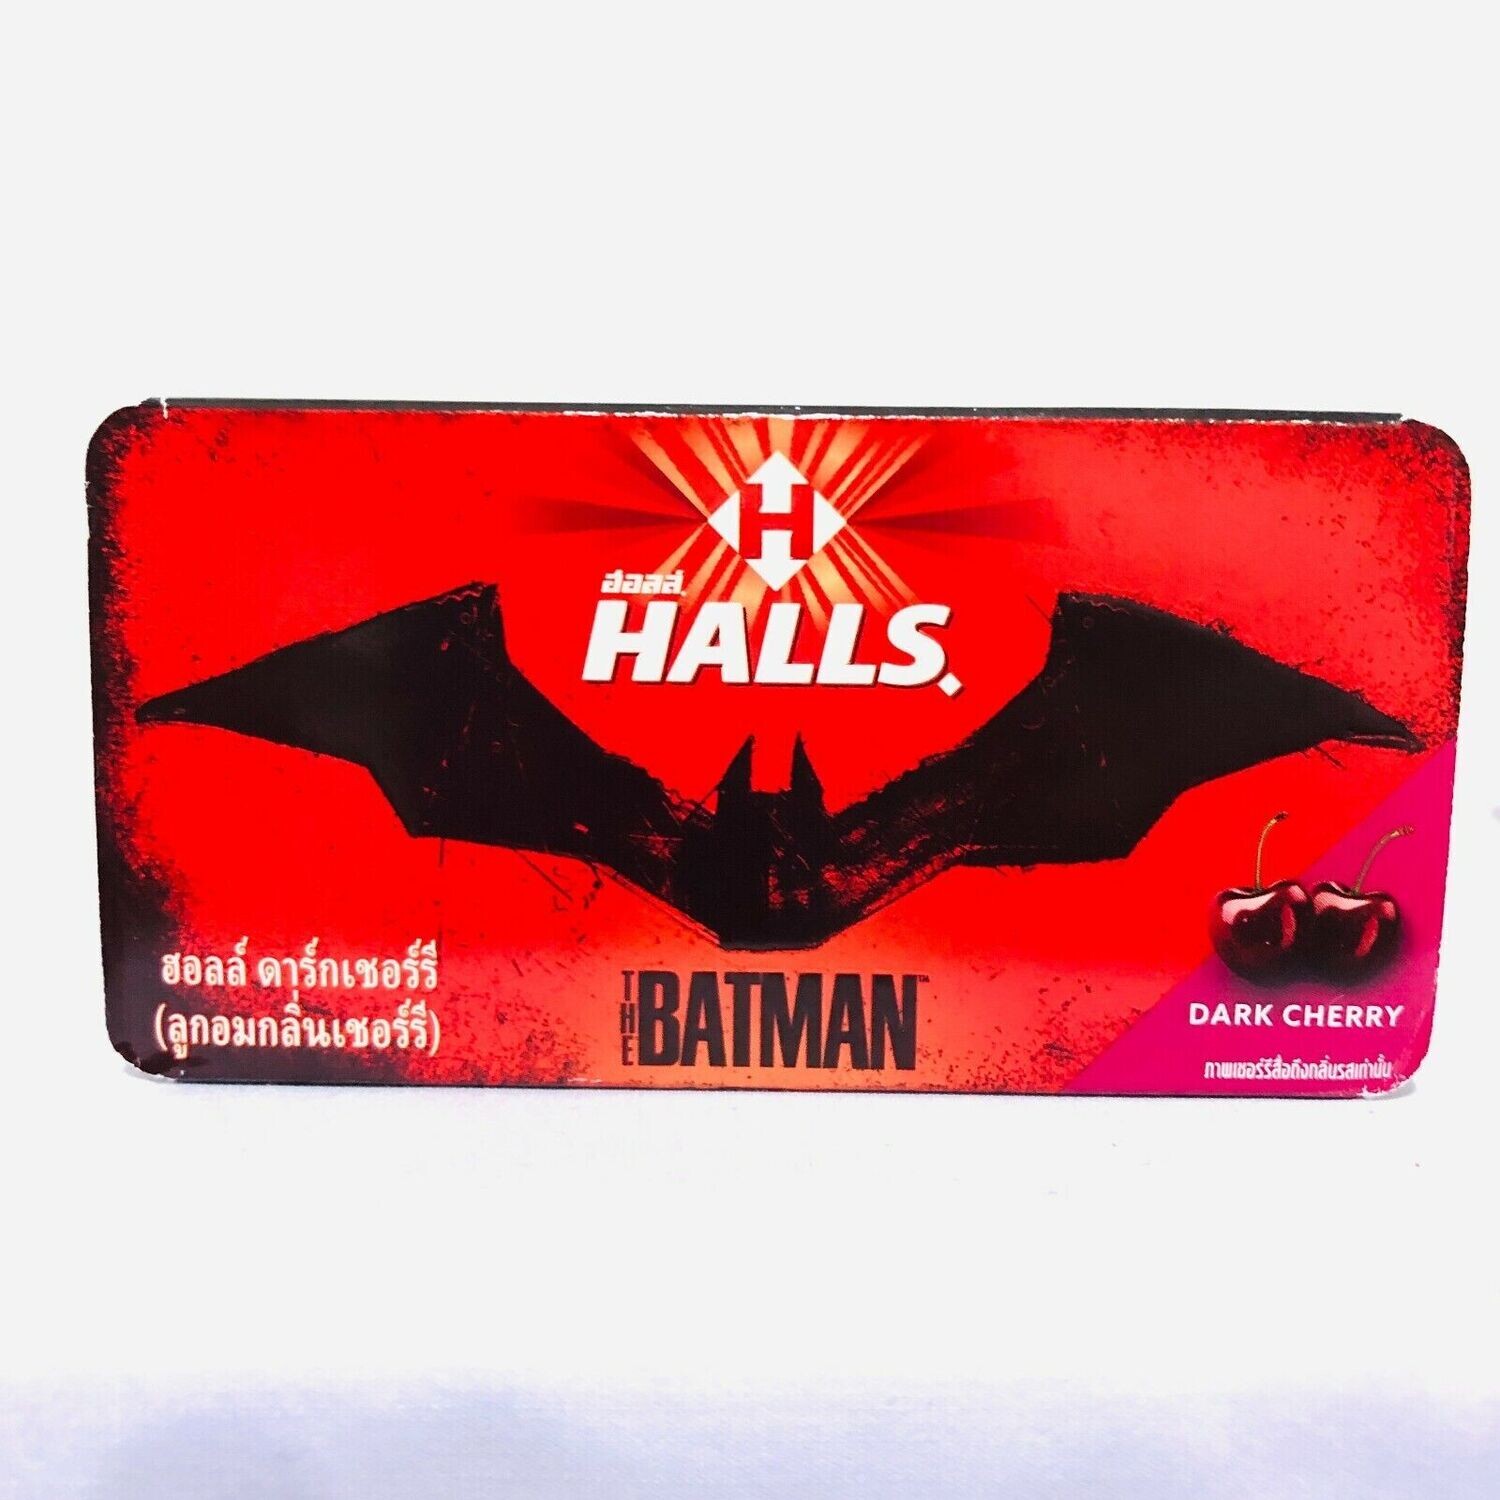 The Batman” HALLS DARK CHERRY Flavor Candy